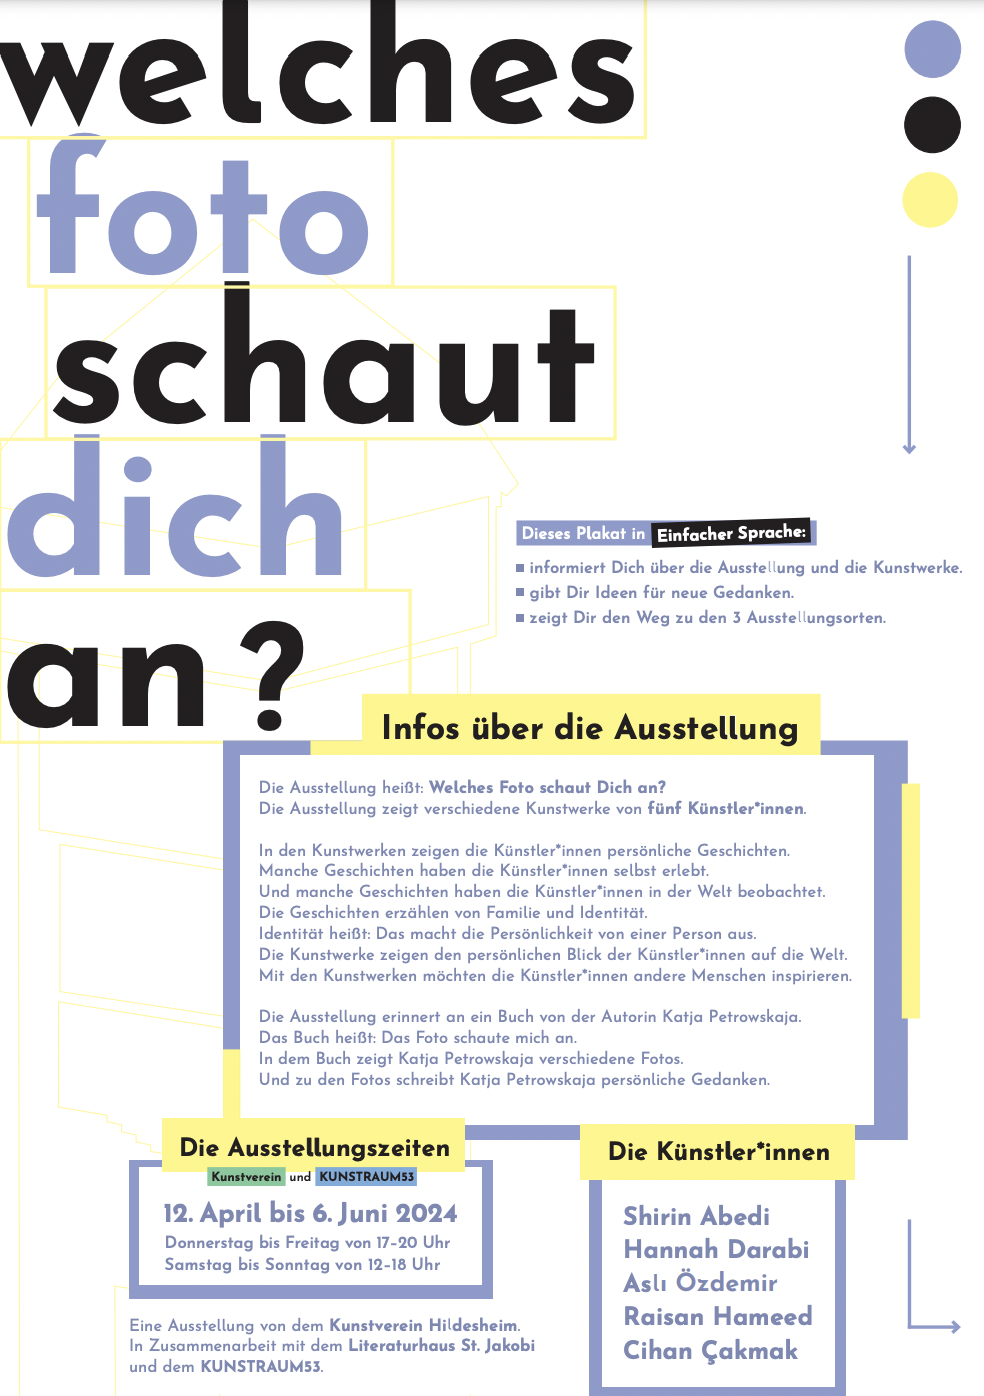 Erste Plakatseite "Welches Foto schaut dich an" mit Informationen zur Ausstellung in Leichter Sprache.